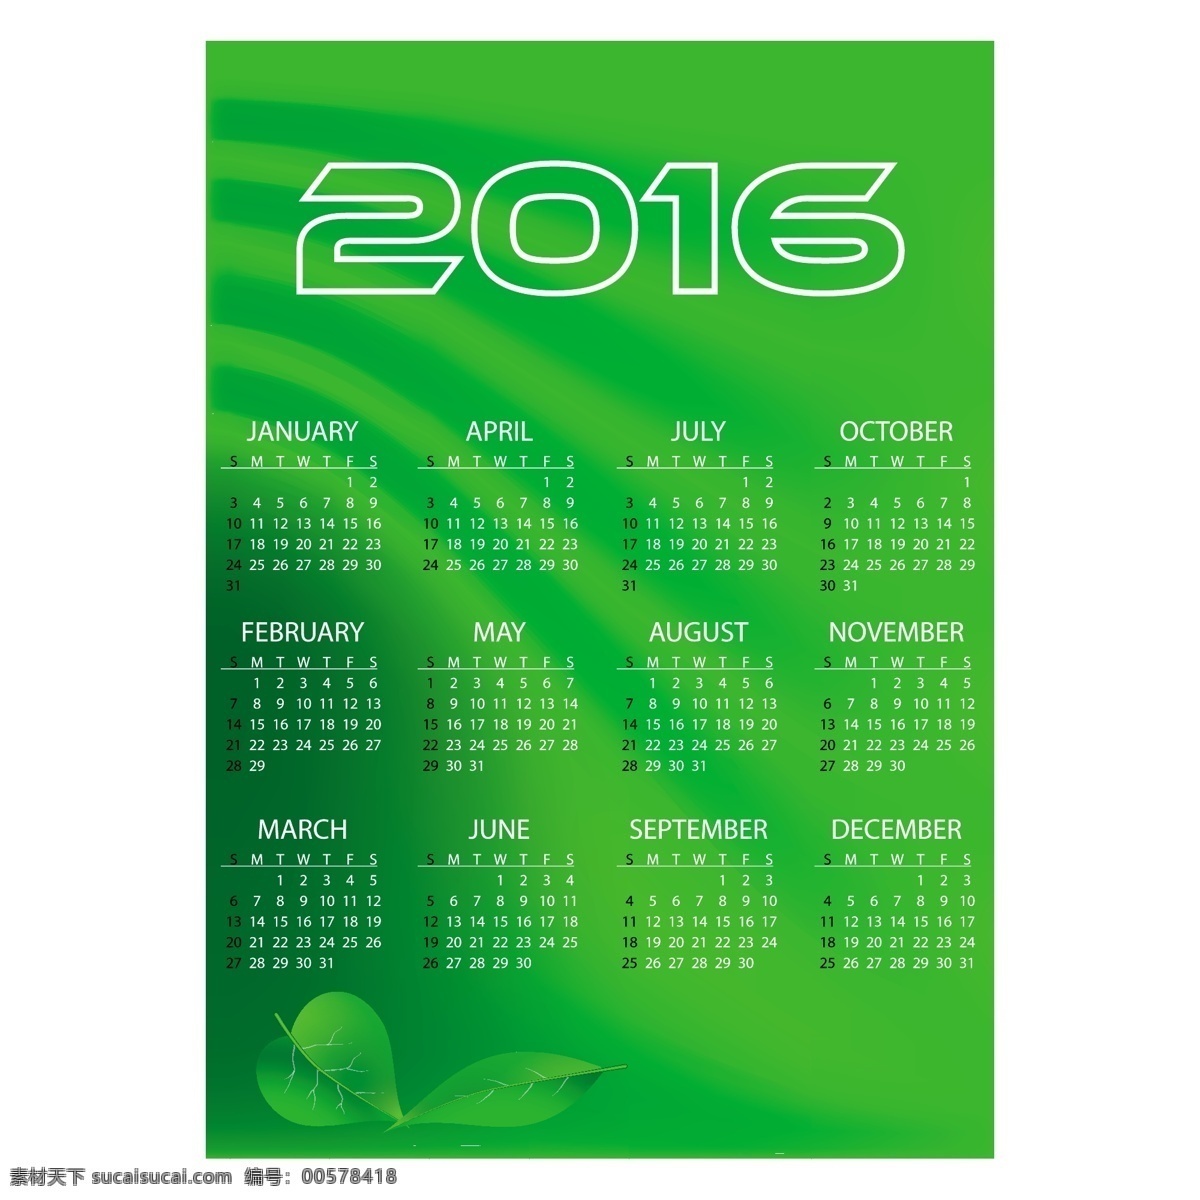 2016 猴年 日历 模板 矢量 v 2016年 年 日历卡 猴年日历 日历表 日历版式 日历设计 炫彩 花纹 蓝色 紫色 绿色 黄色 水果 几何 圆形 六边形 日历素材 节日素材 矢量素材 红色